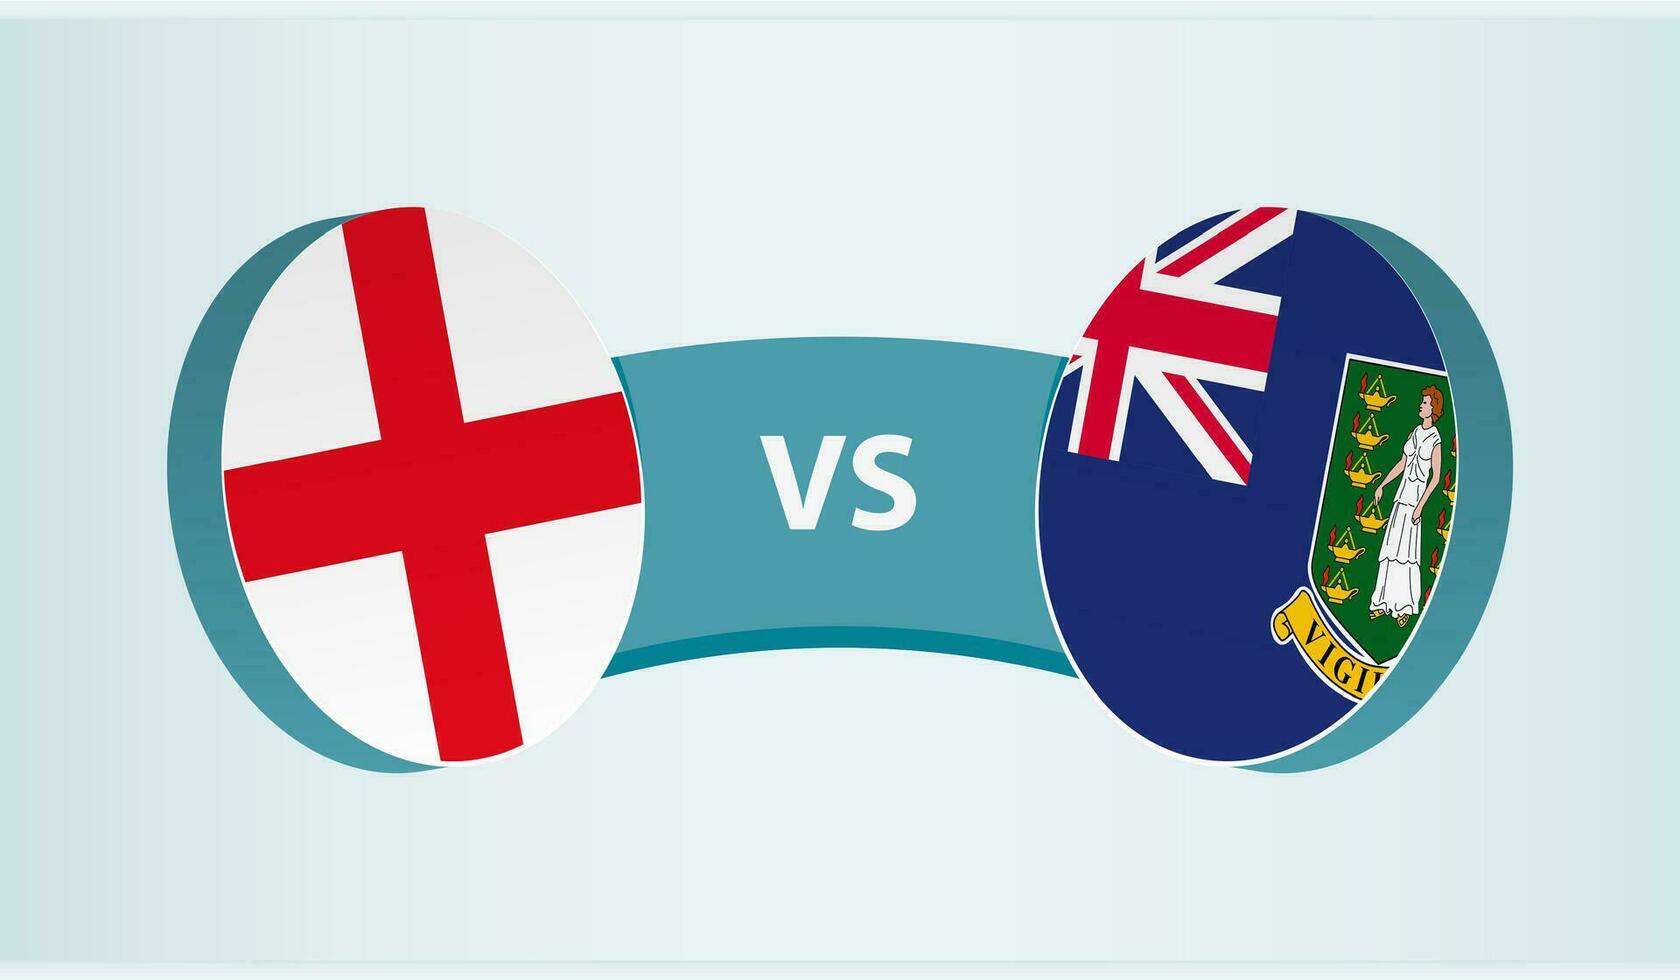 Inglaterra versus británico Virgen islas, equipo Deportes competencia concepto. vector